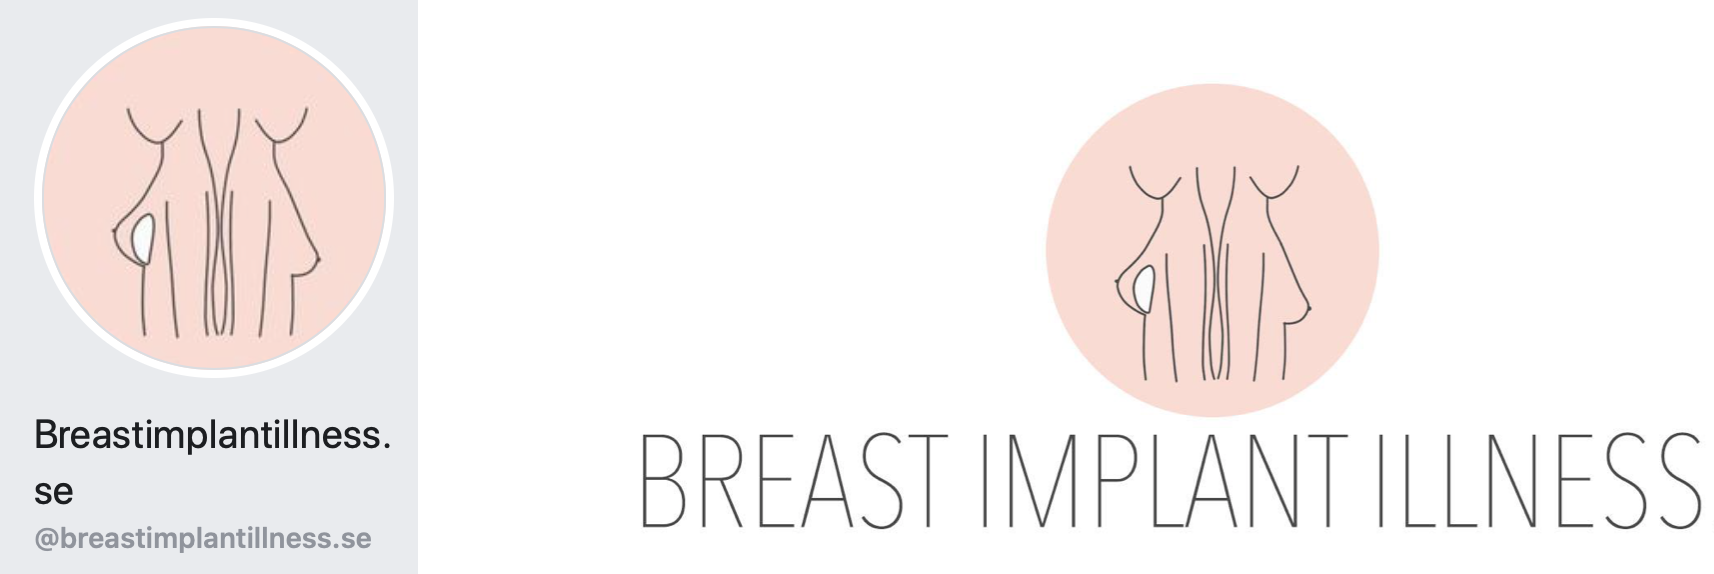 Breast implant illness.se facebooksida